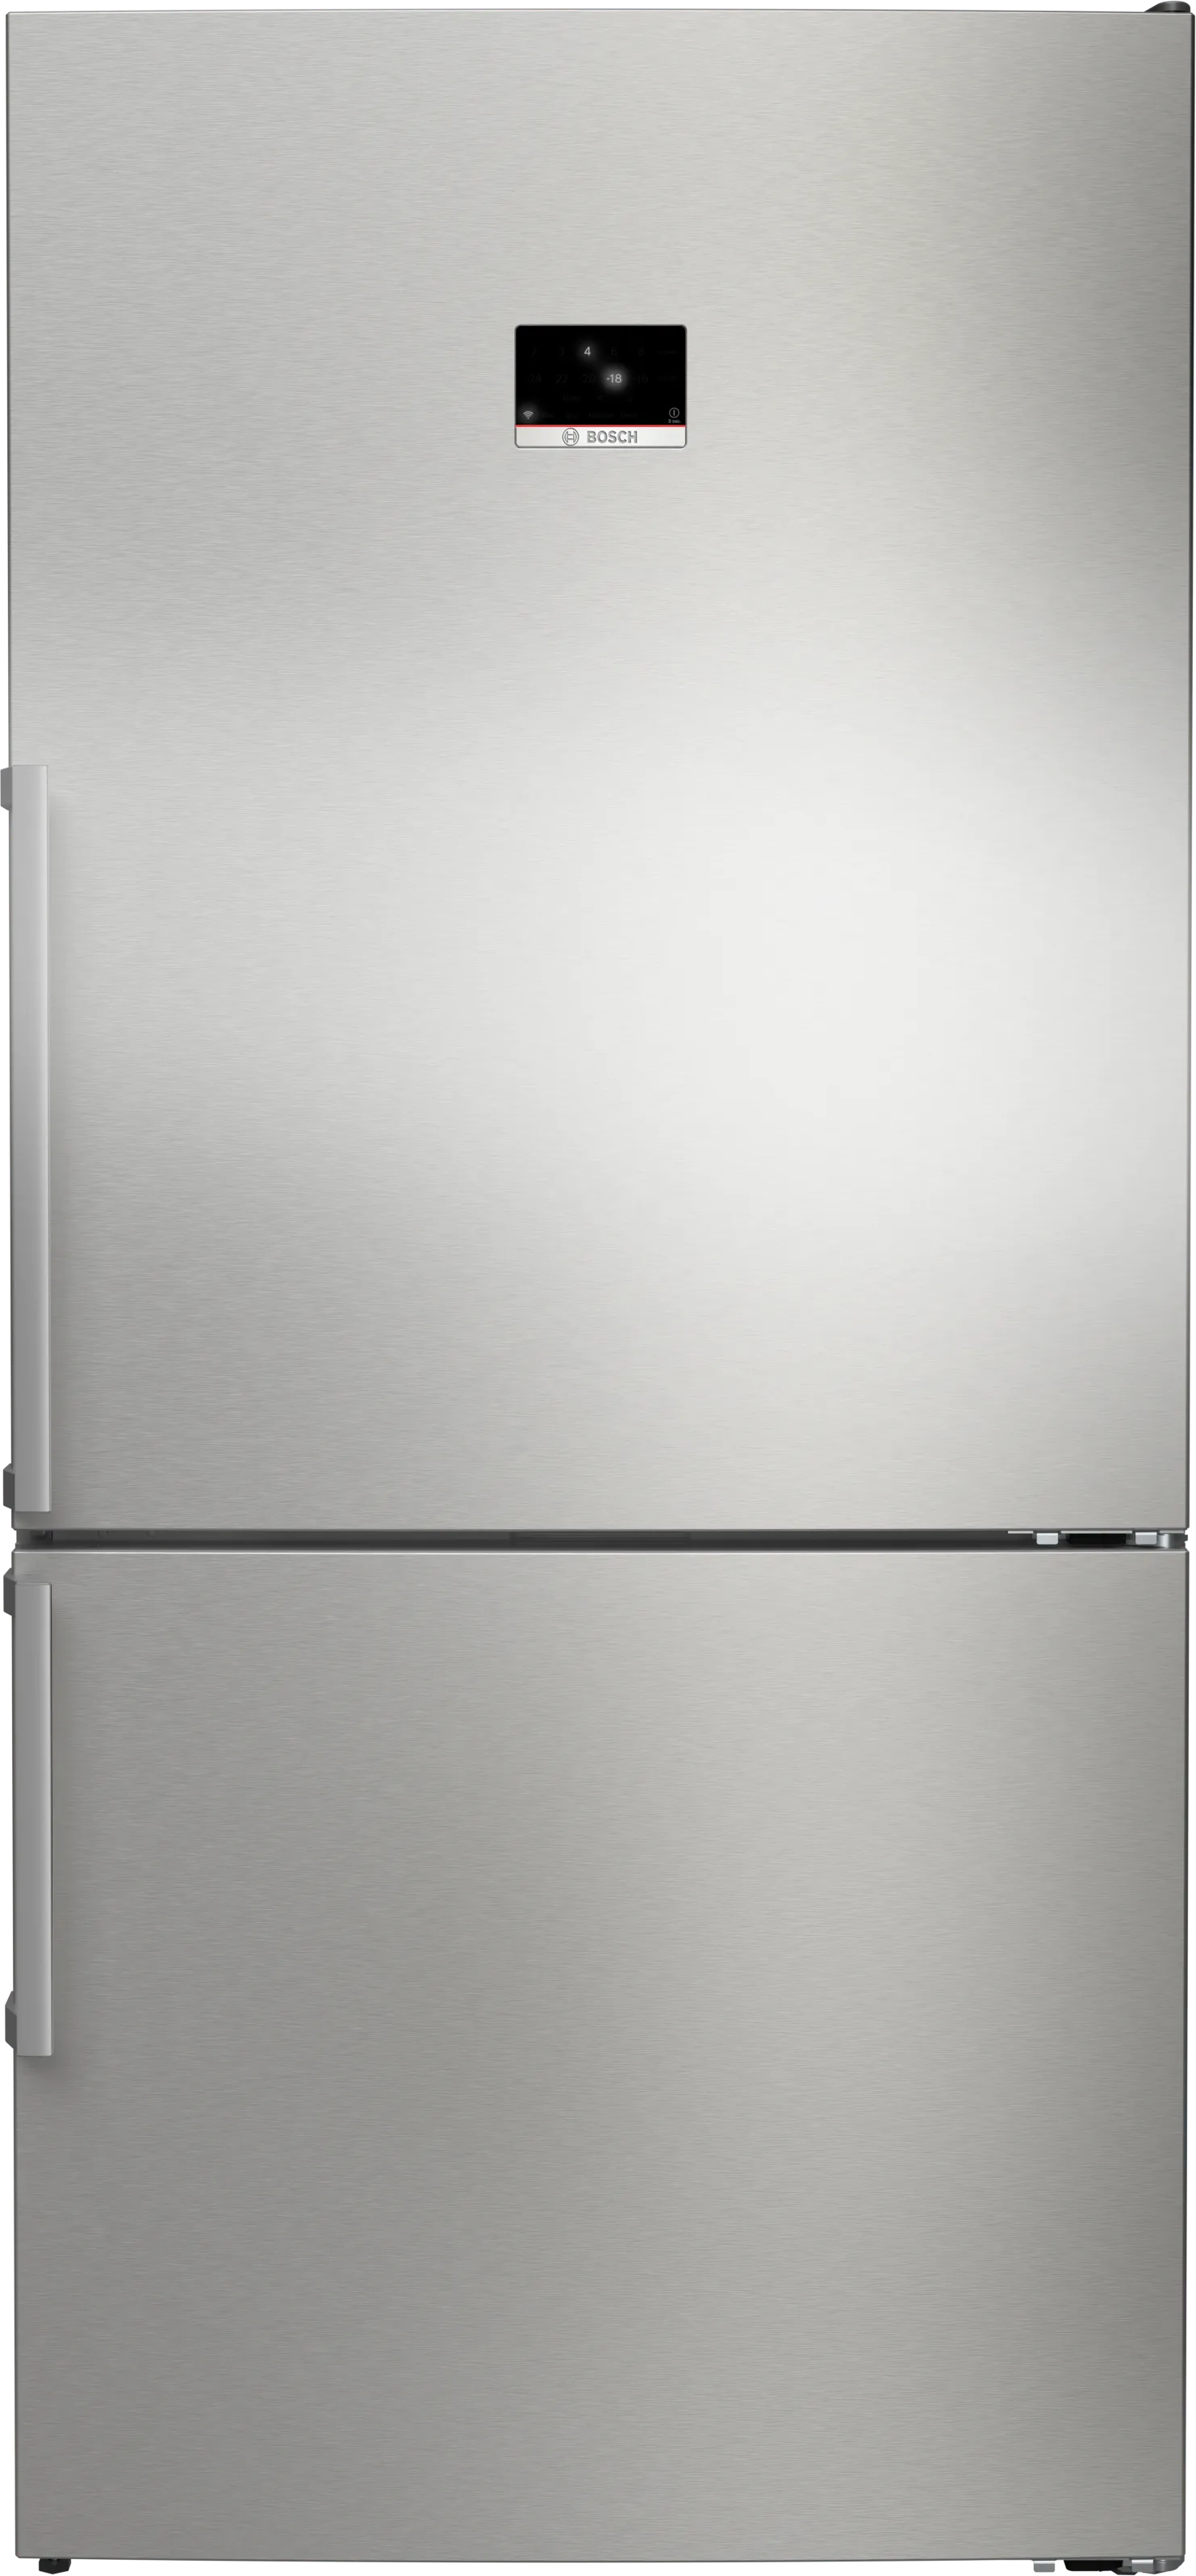 Serie 8 Freistehende Kühl-Gefrier-Kombination mit Gefrierbereich unten 186 x 86 cm Edelstahl (mit Antifingerprint) 